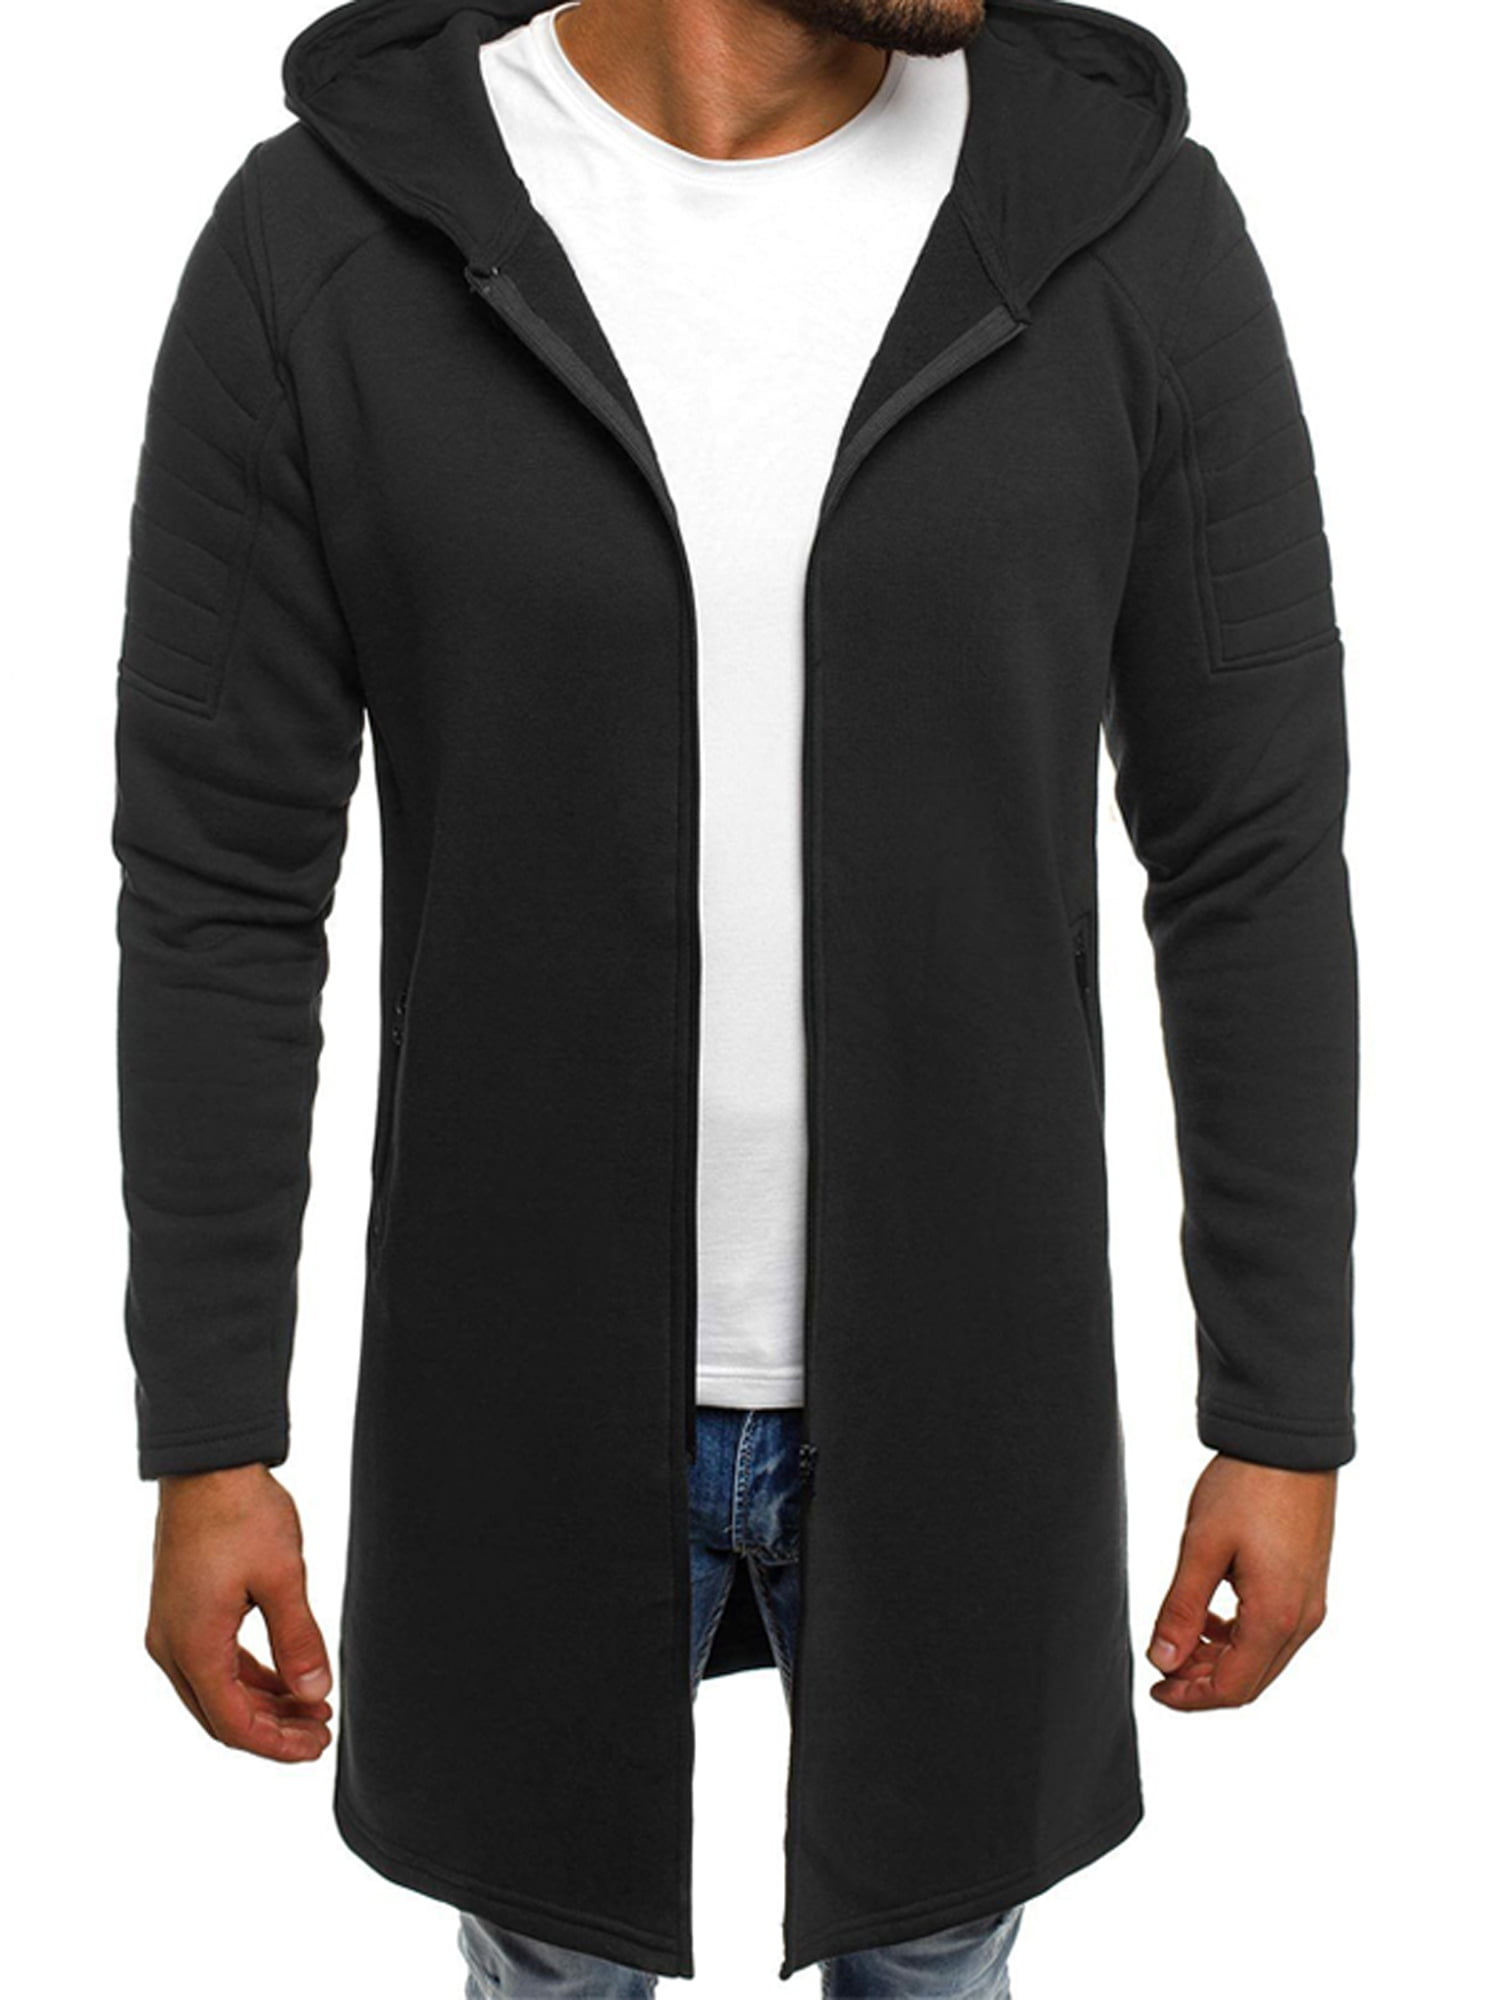 Lallc - Men's Hoodie Long Jacket Overcoat Winter Warm Hooded Zip Up ...